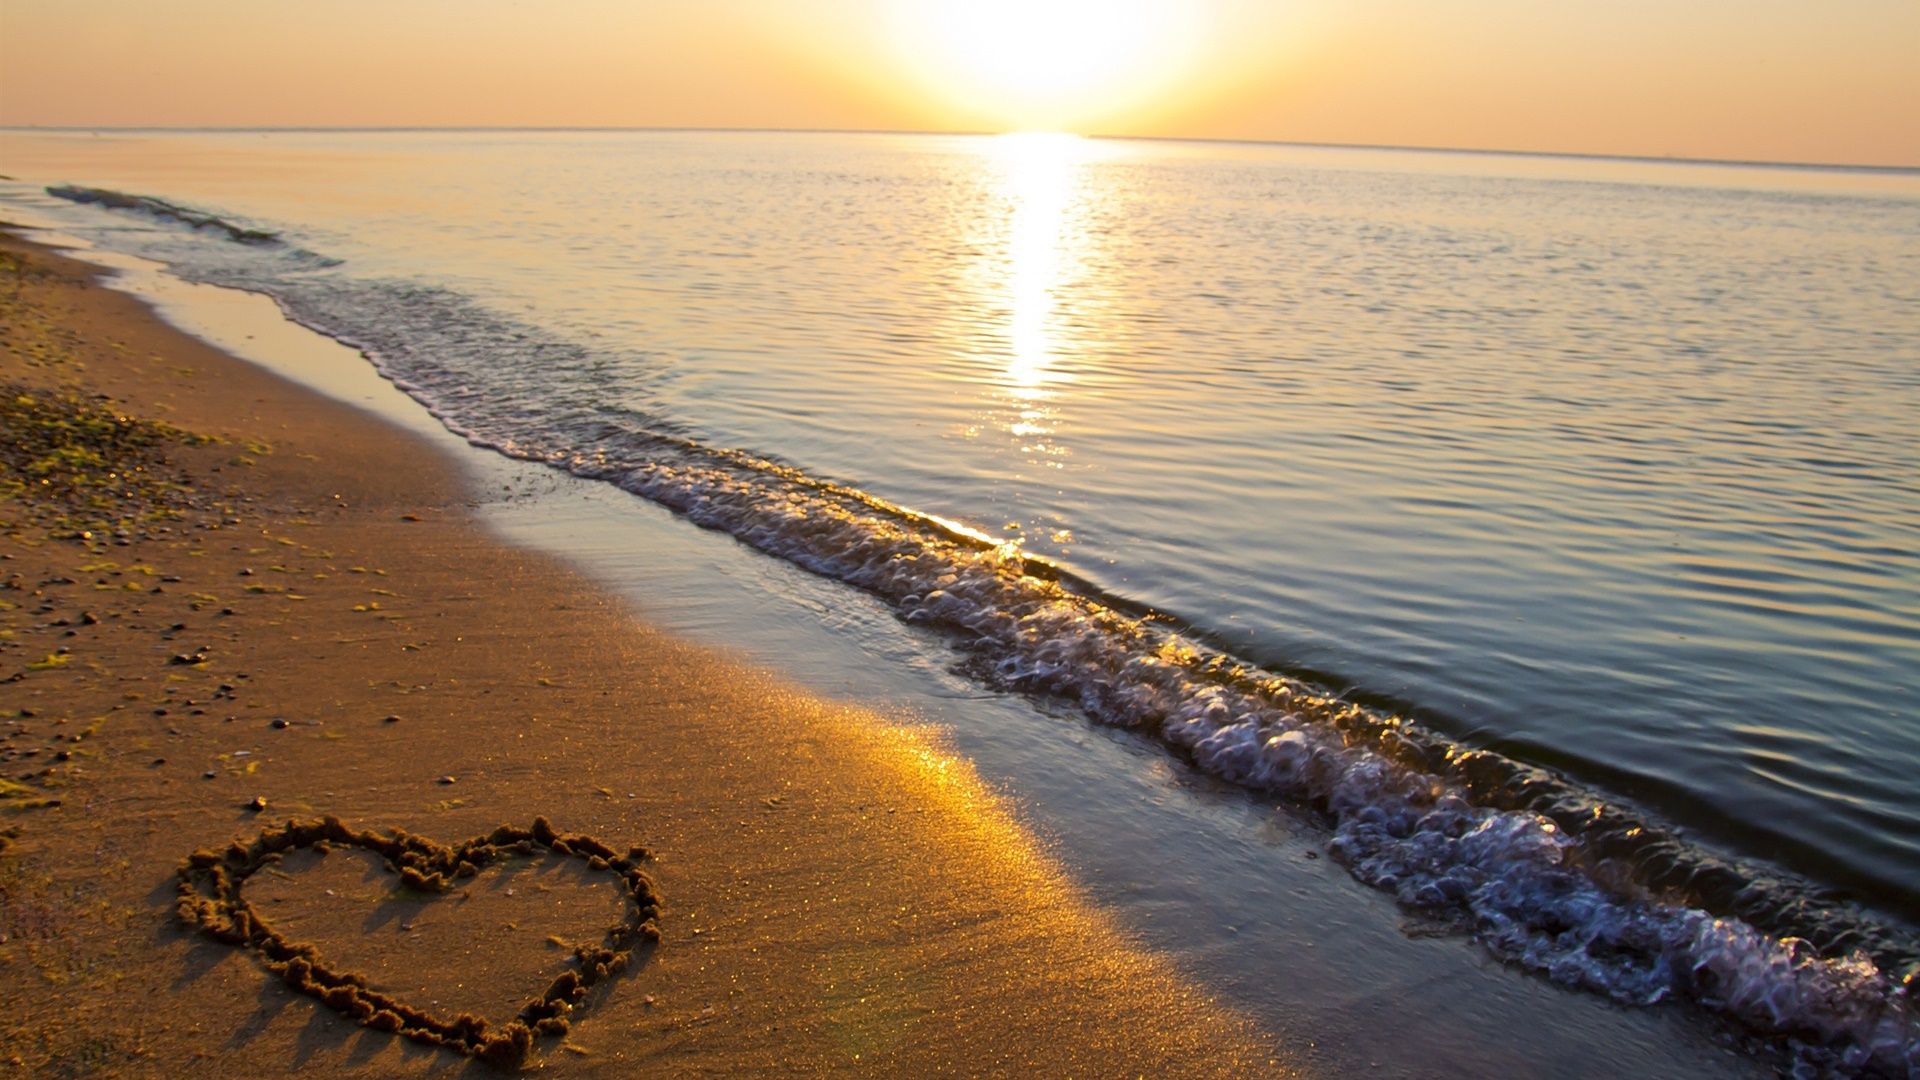 1920x1080 Sand beach, sea, sunset, love heart shaped Desktop Wallpaper on WallpaperBat